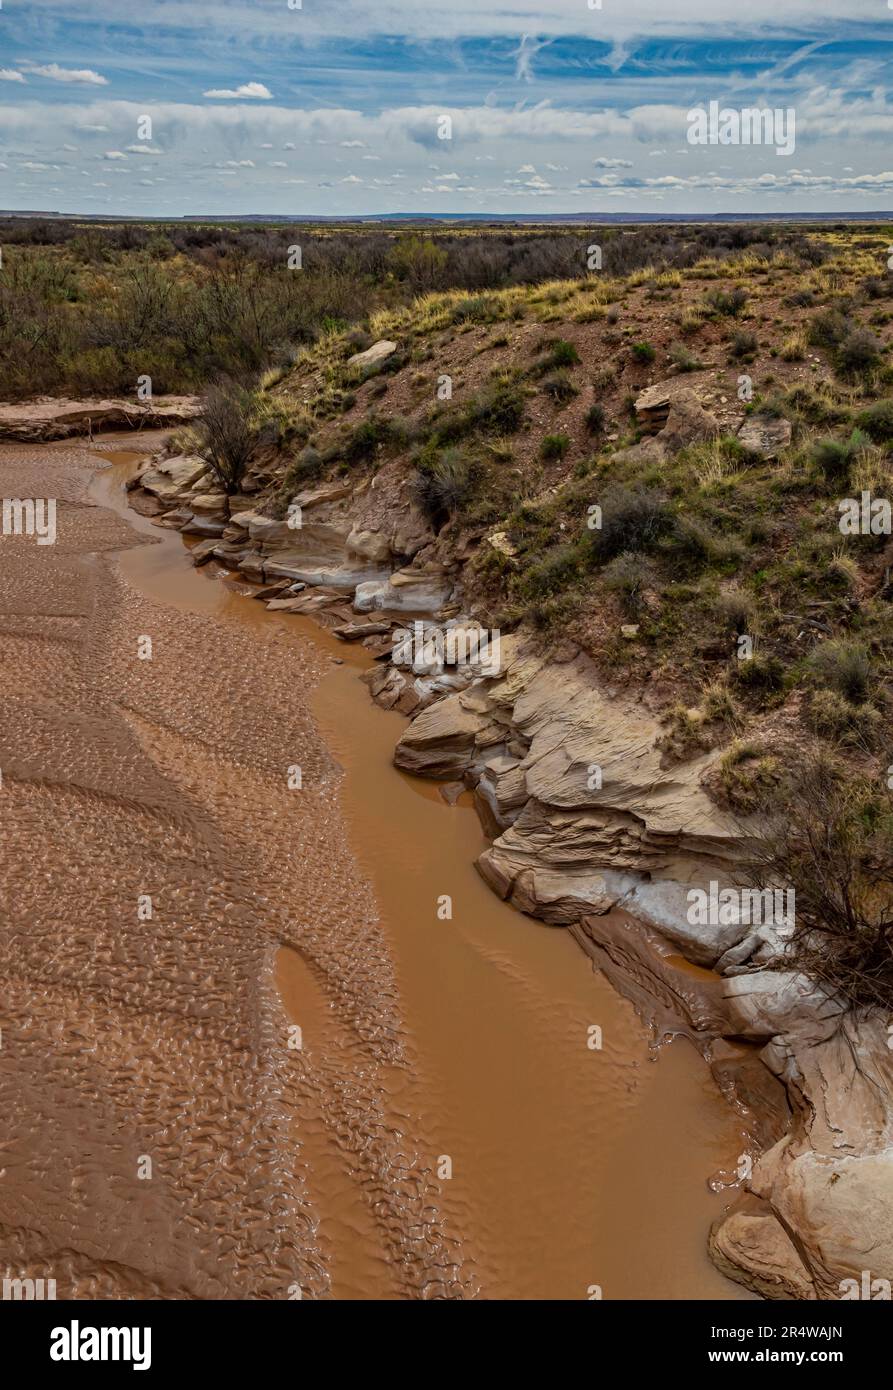 La rivière Puerco, dont l'eau est faible au printemps, traverse parfois le parc national de la forêt pétrifiée, dans le comté d'Apache, en Arizona. Banque D'Images